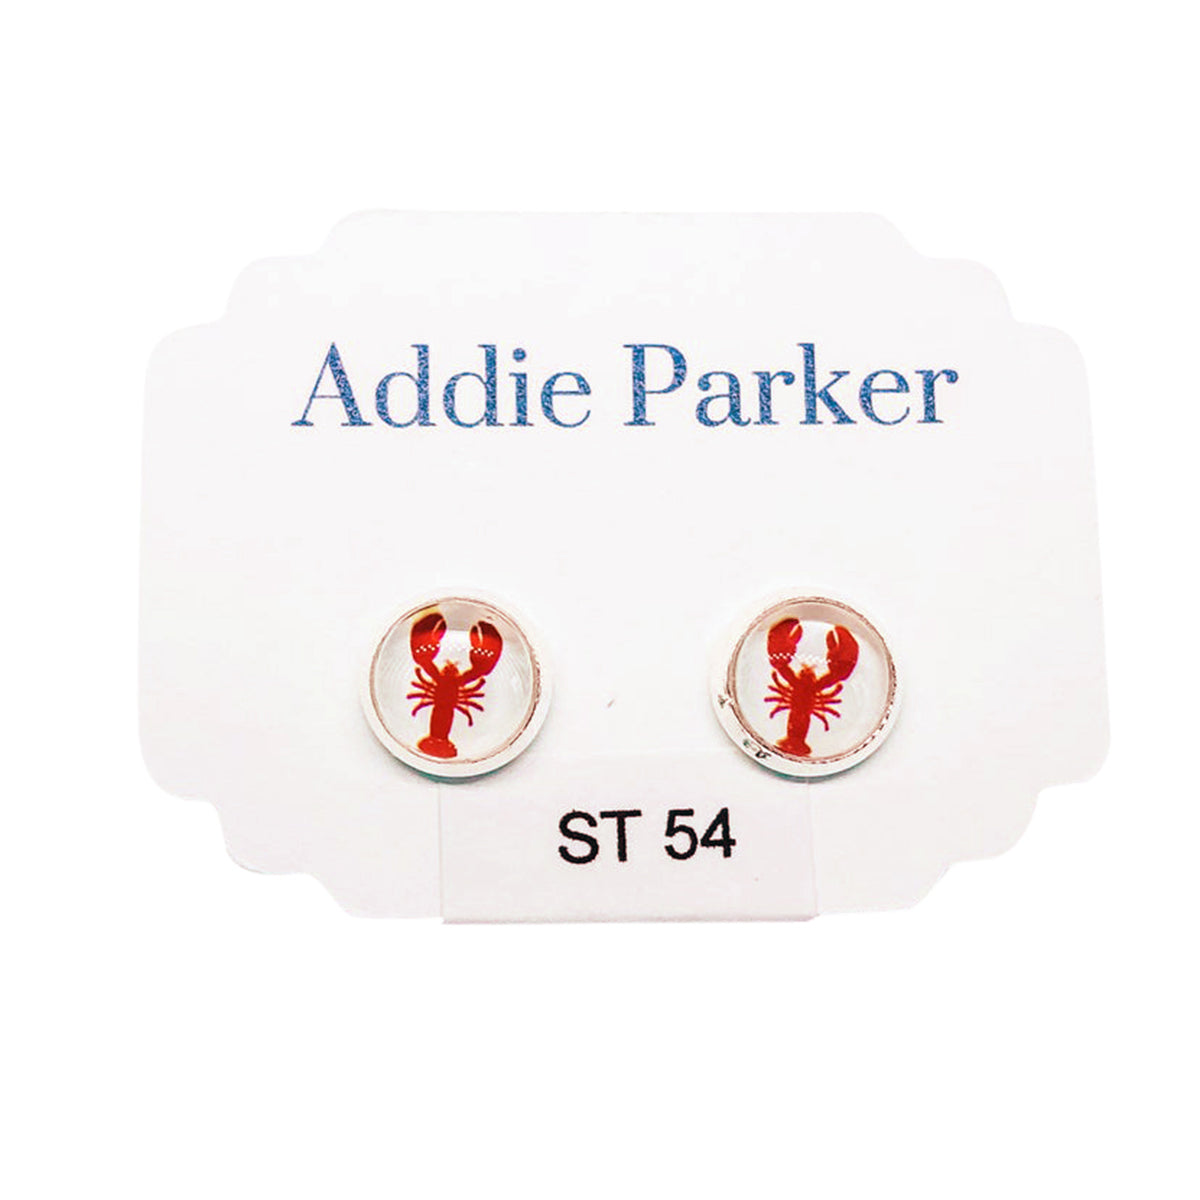 ADDIE PARKER STUD EARRINGS LOBSTERS